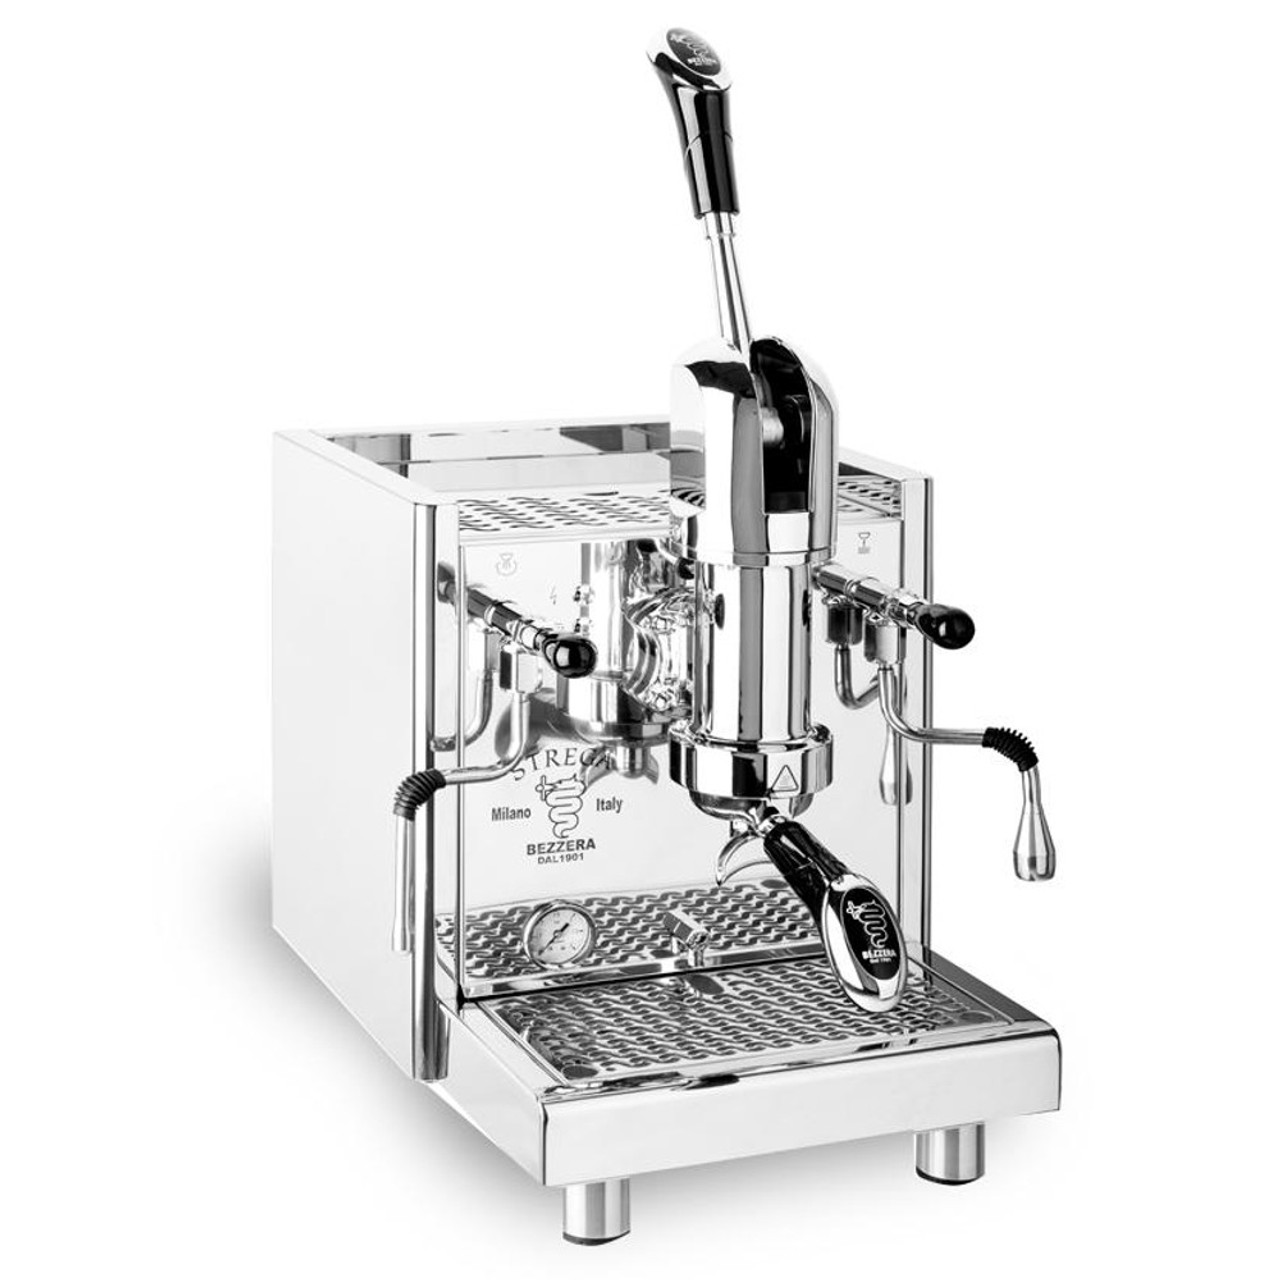 BEZZERA STREGA TOP Lever 2L Espresso Coffee Machine - ESPRESSO MACHINE ...